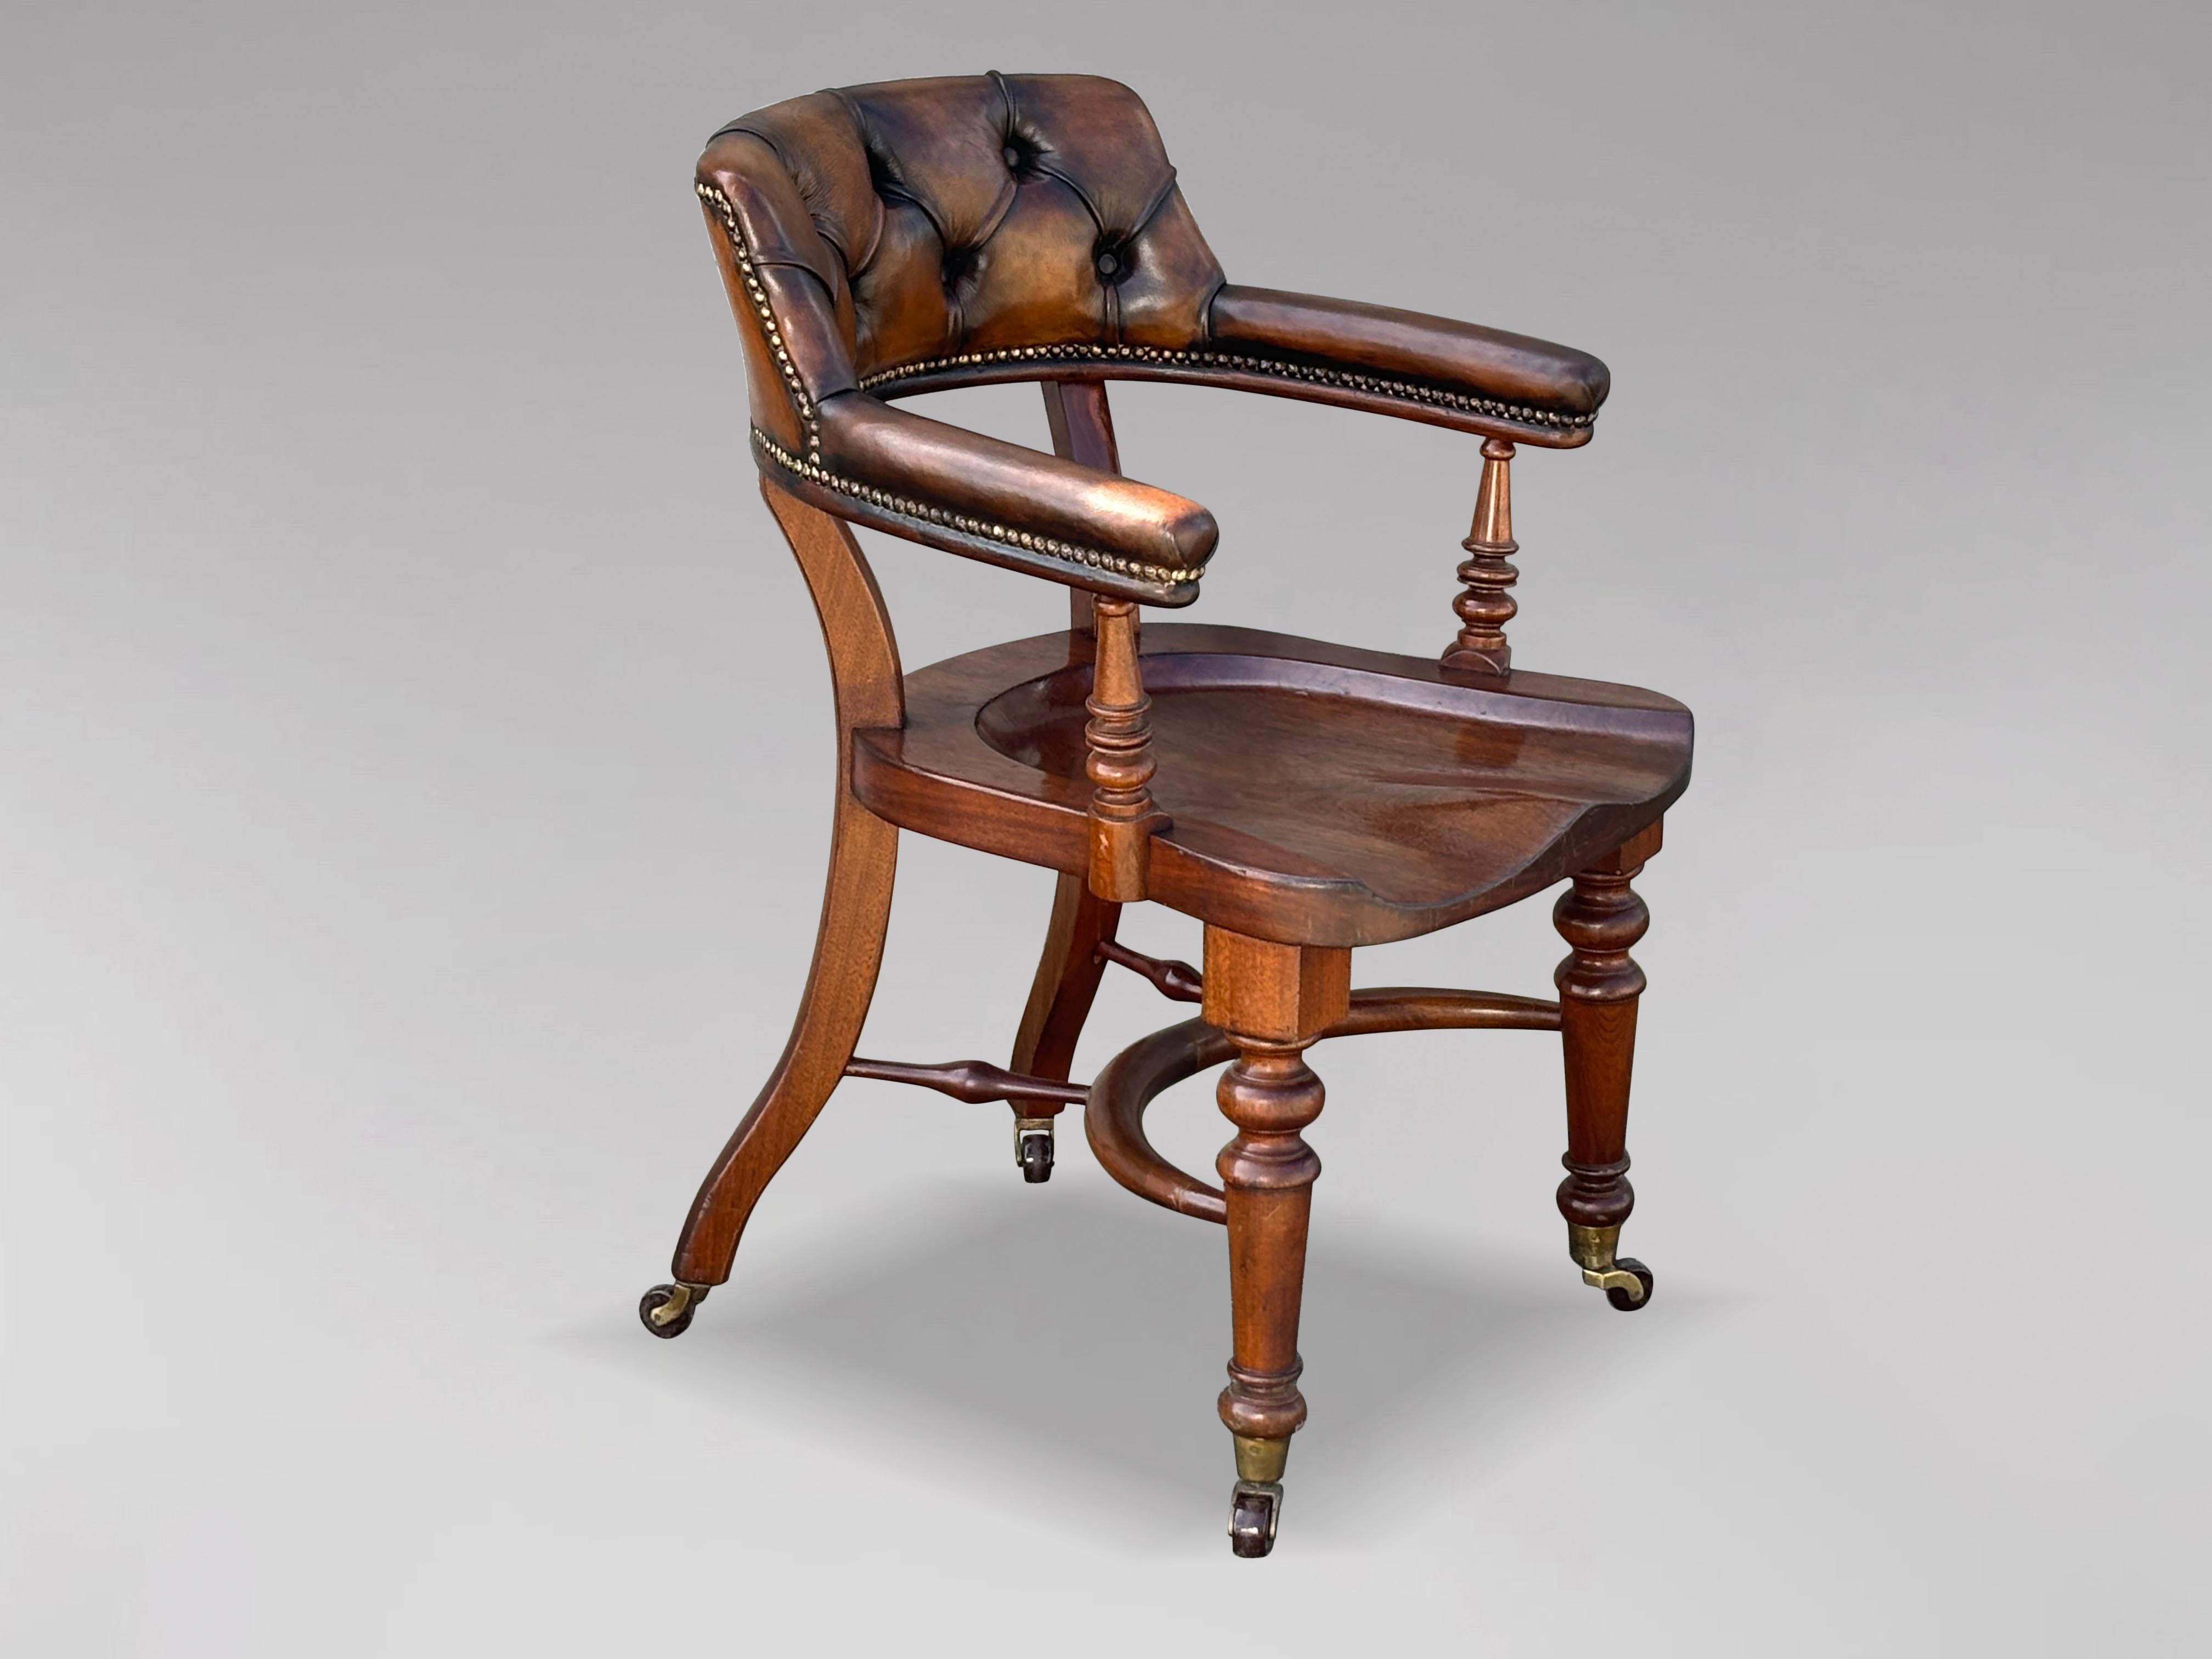 Eine feine Qualität 19. Jahrhundert Englisch viktorianischen Zeit Sattelsitz Schreibtischstuhl, aus massivem Mahagoni mit einem braunen gepolsterten Rückenlehne und Armlehnen gebaut, um 1880. Der Bürostuhl aus Mahagoni verfügt über eine